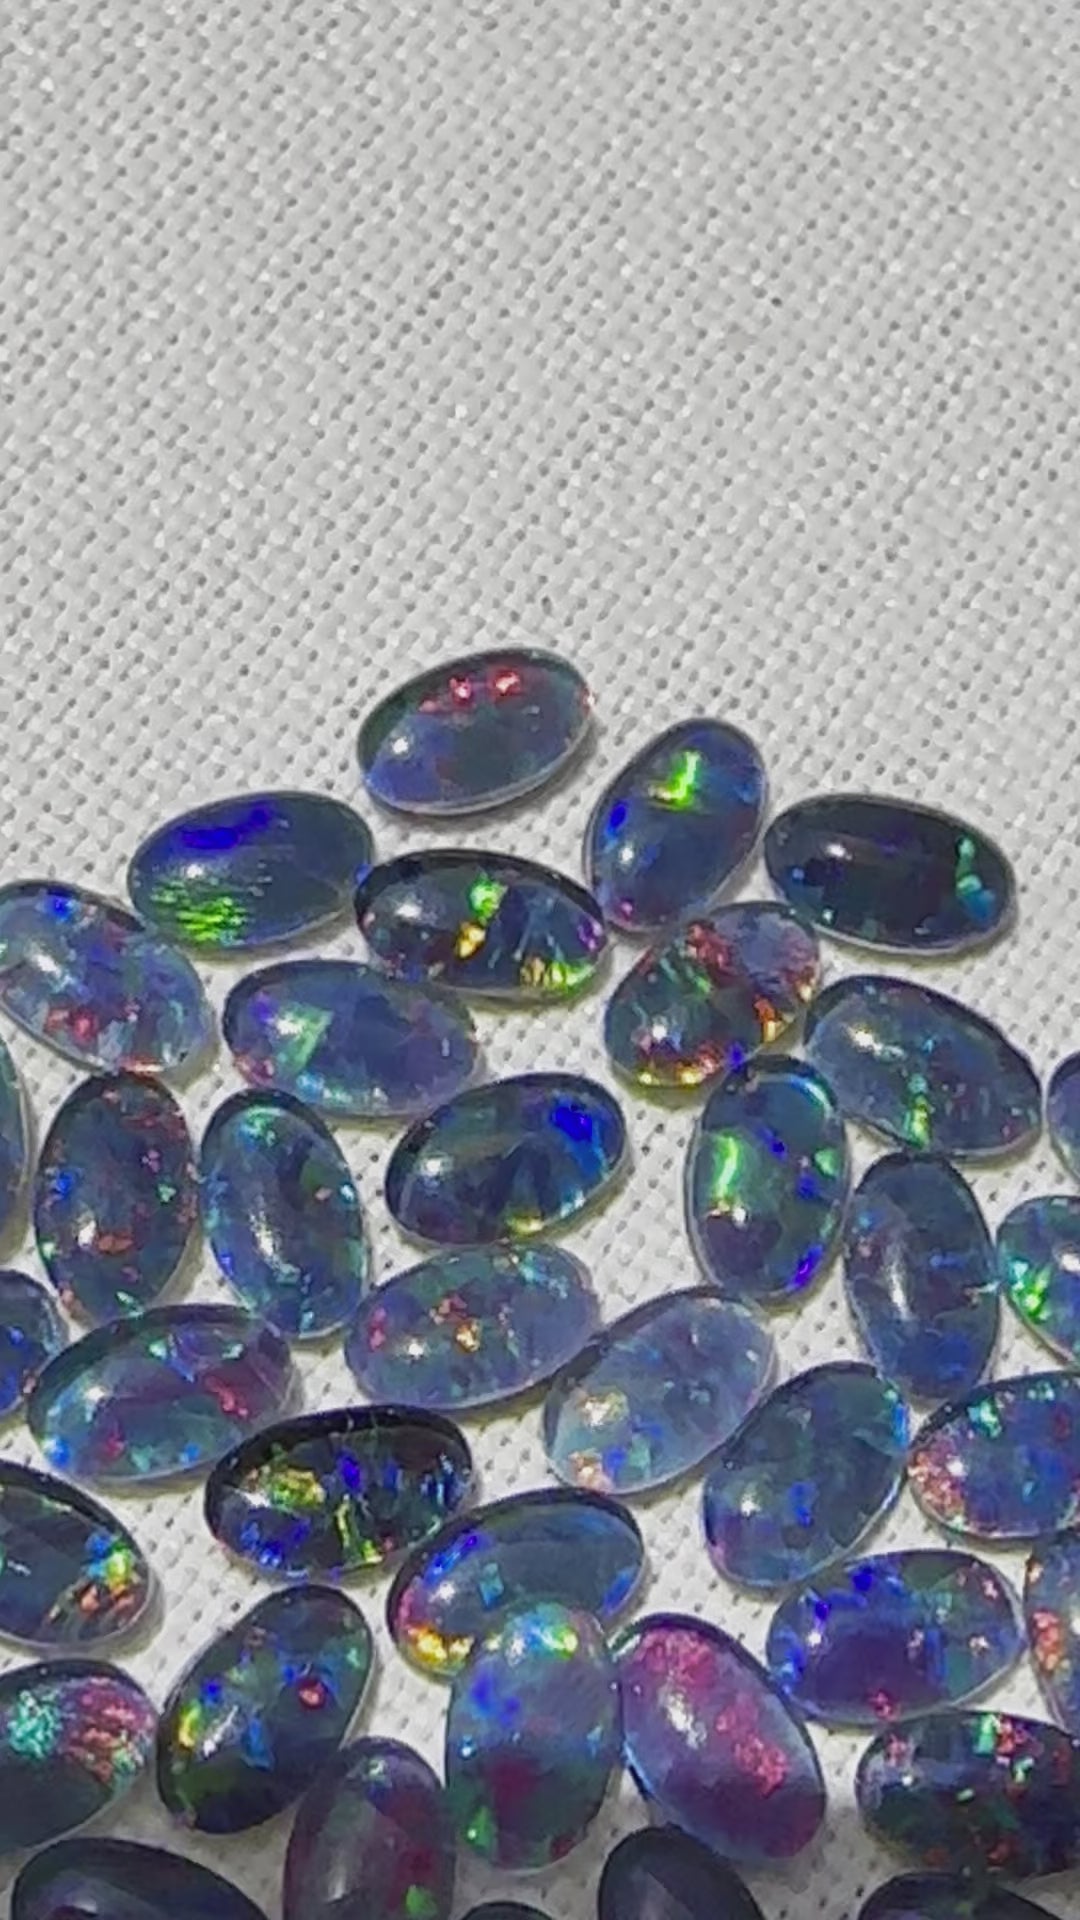 Australian Opal triplets - 5x3 mm